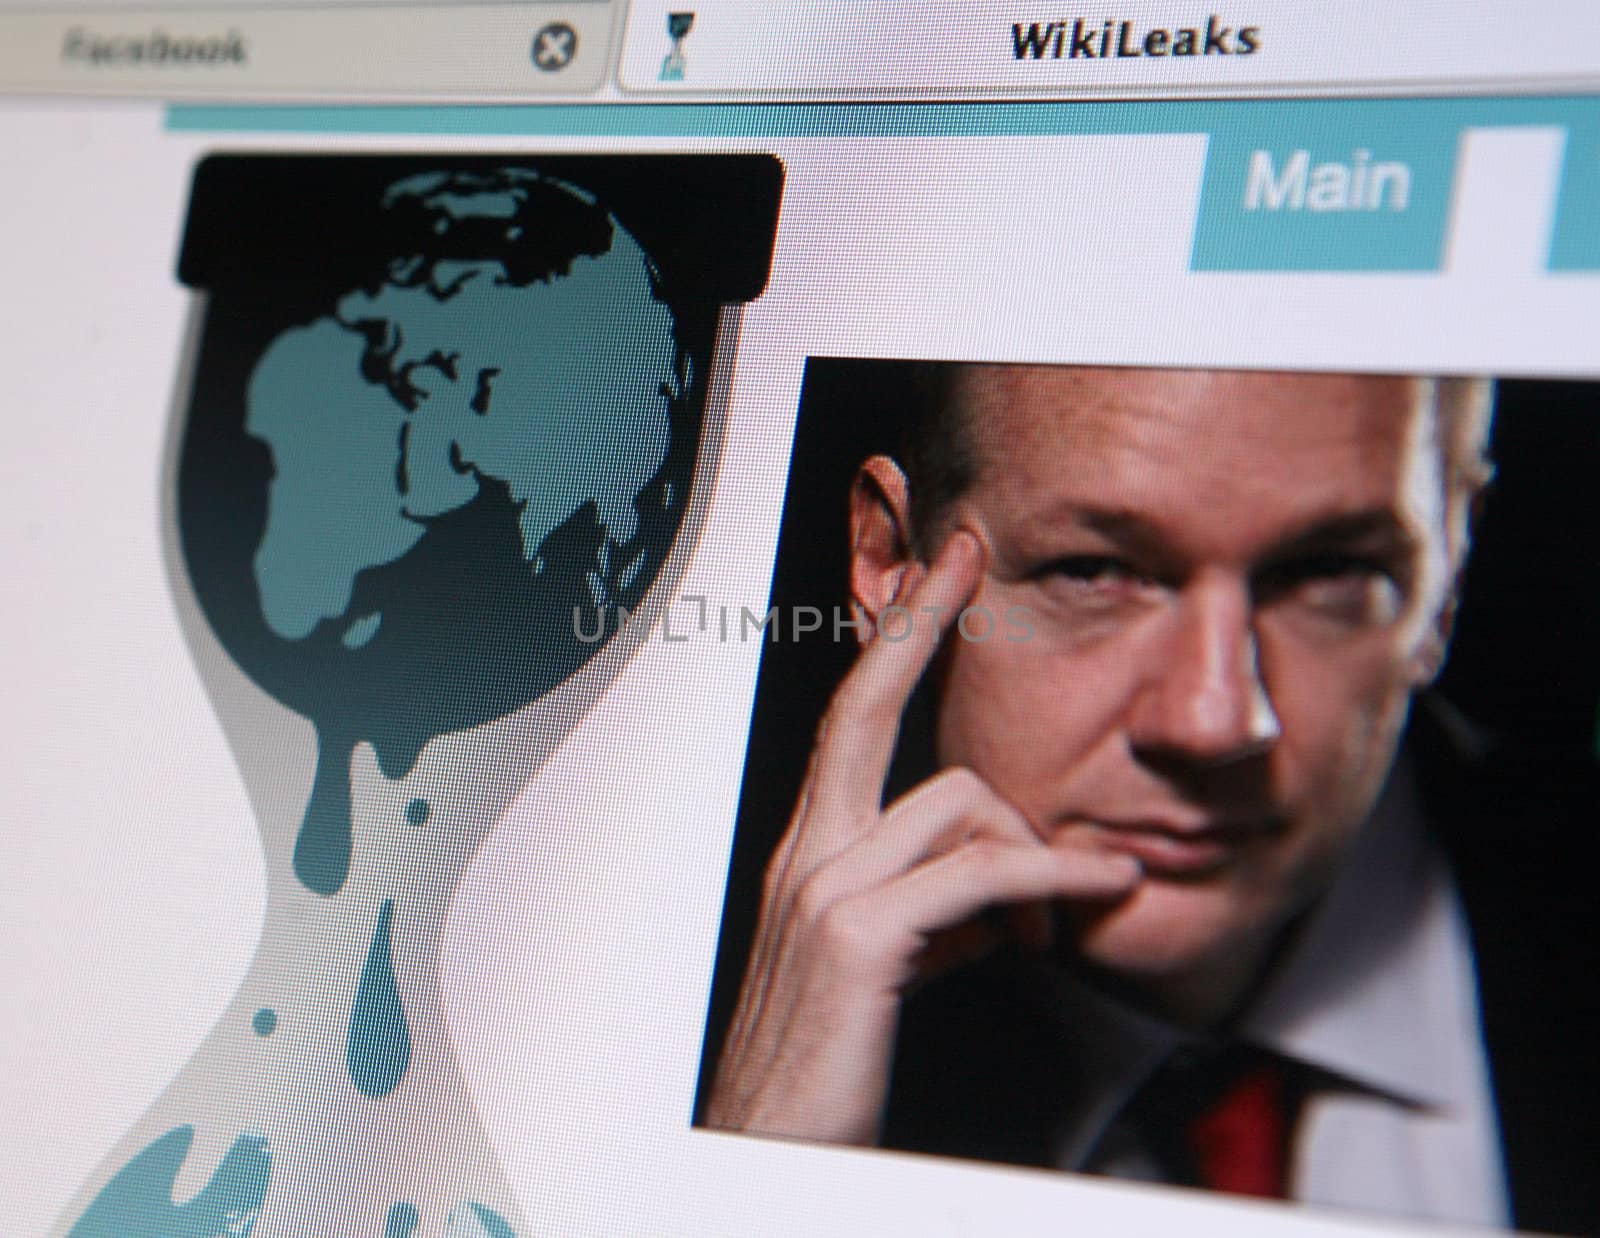 Wikileaks homepage by haak78